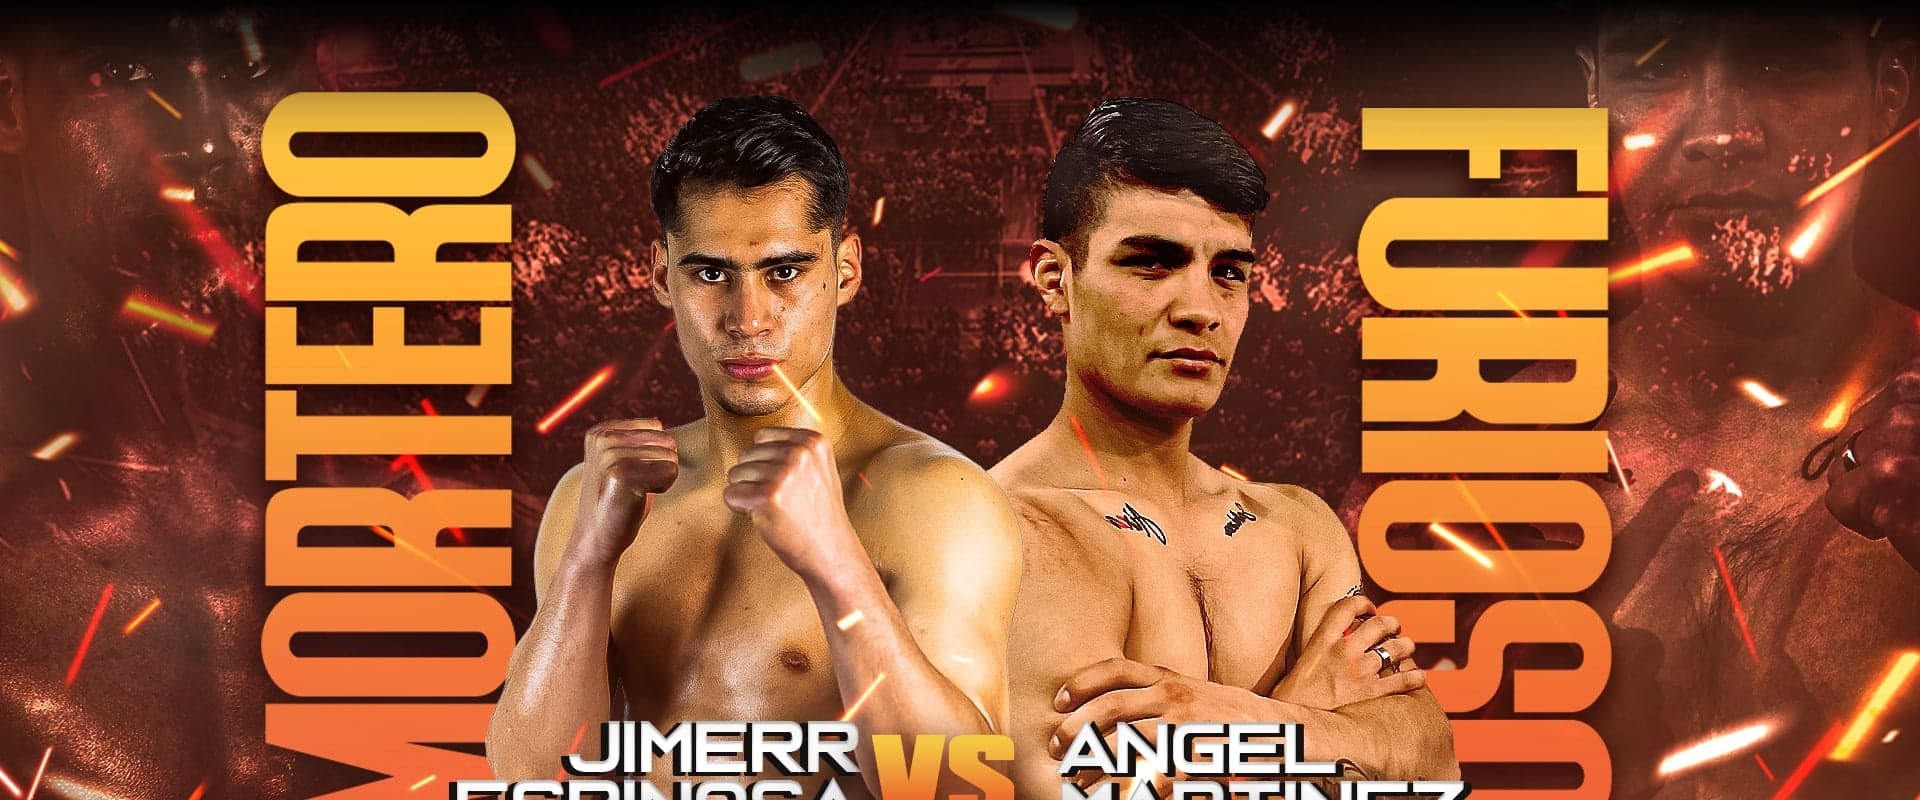 Jimerr Espinosa vs. Angel Hernandez